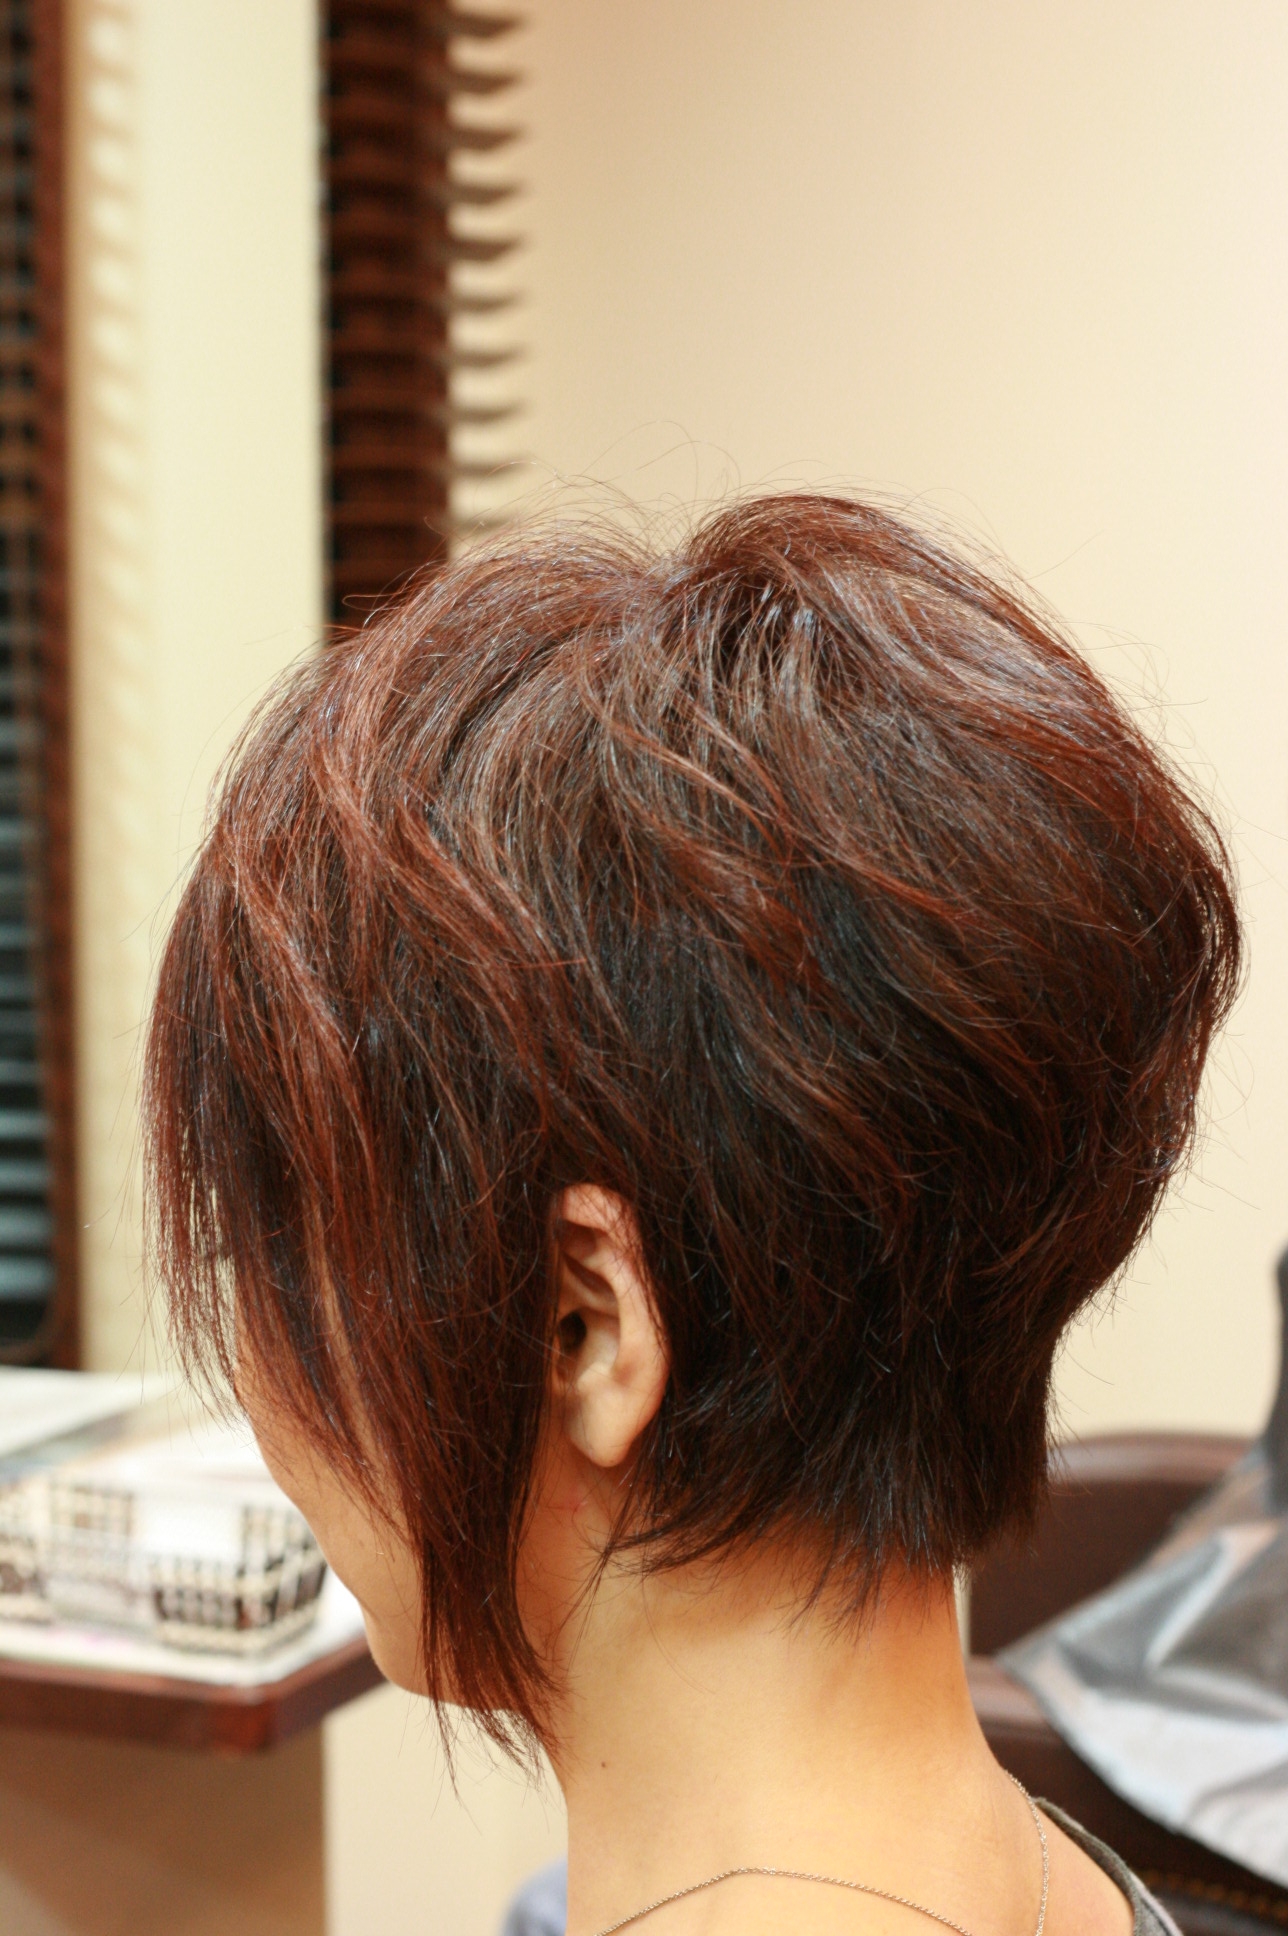 渡辺満里奈さんの髪型 ショートヘアスタイル の巻 有名人の髪型